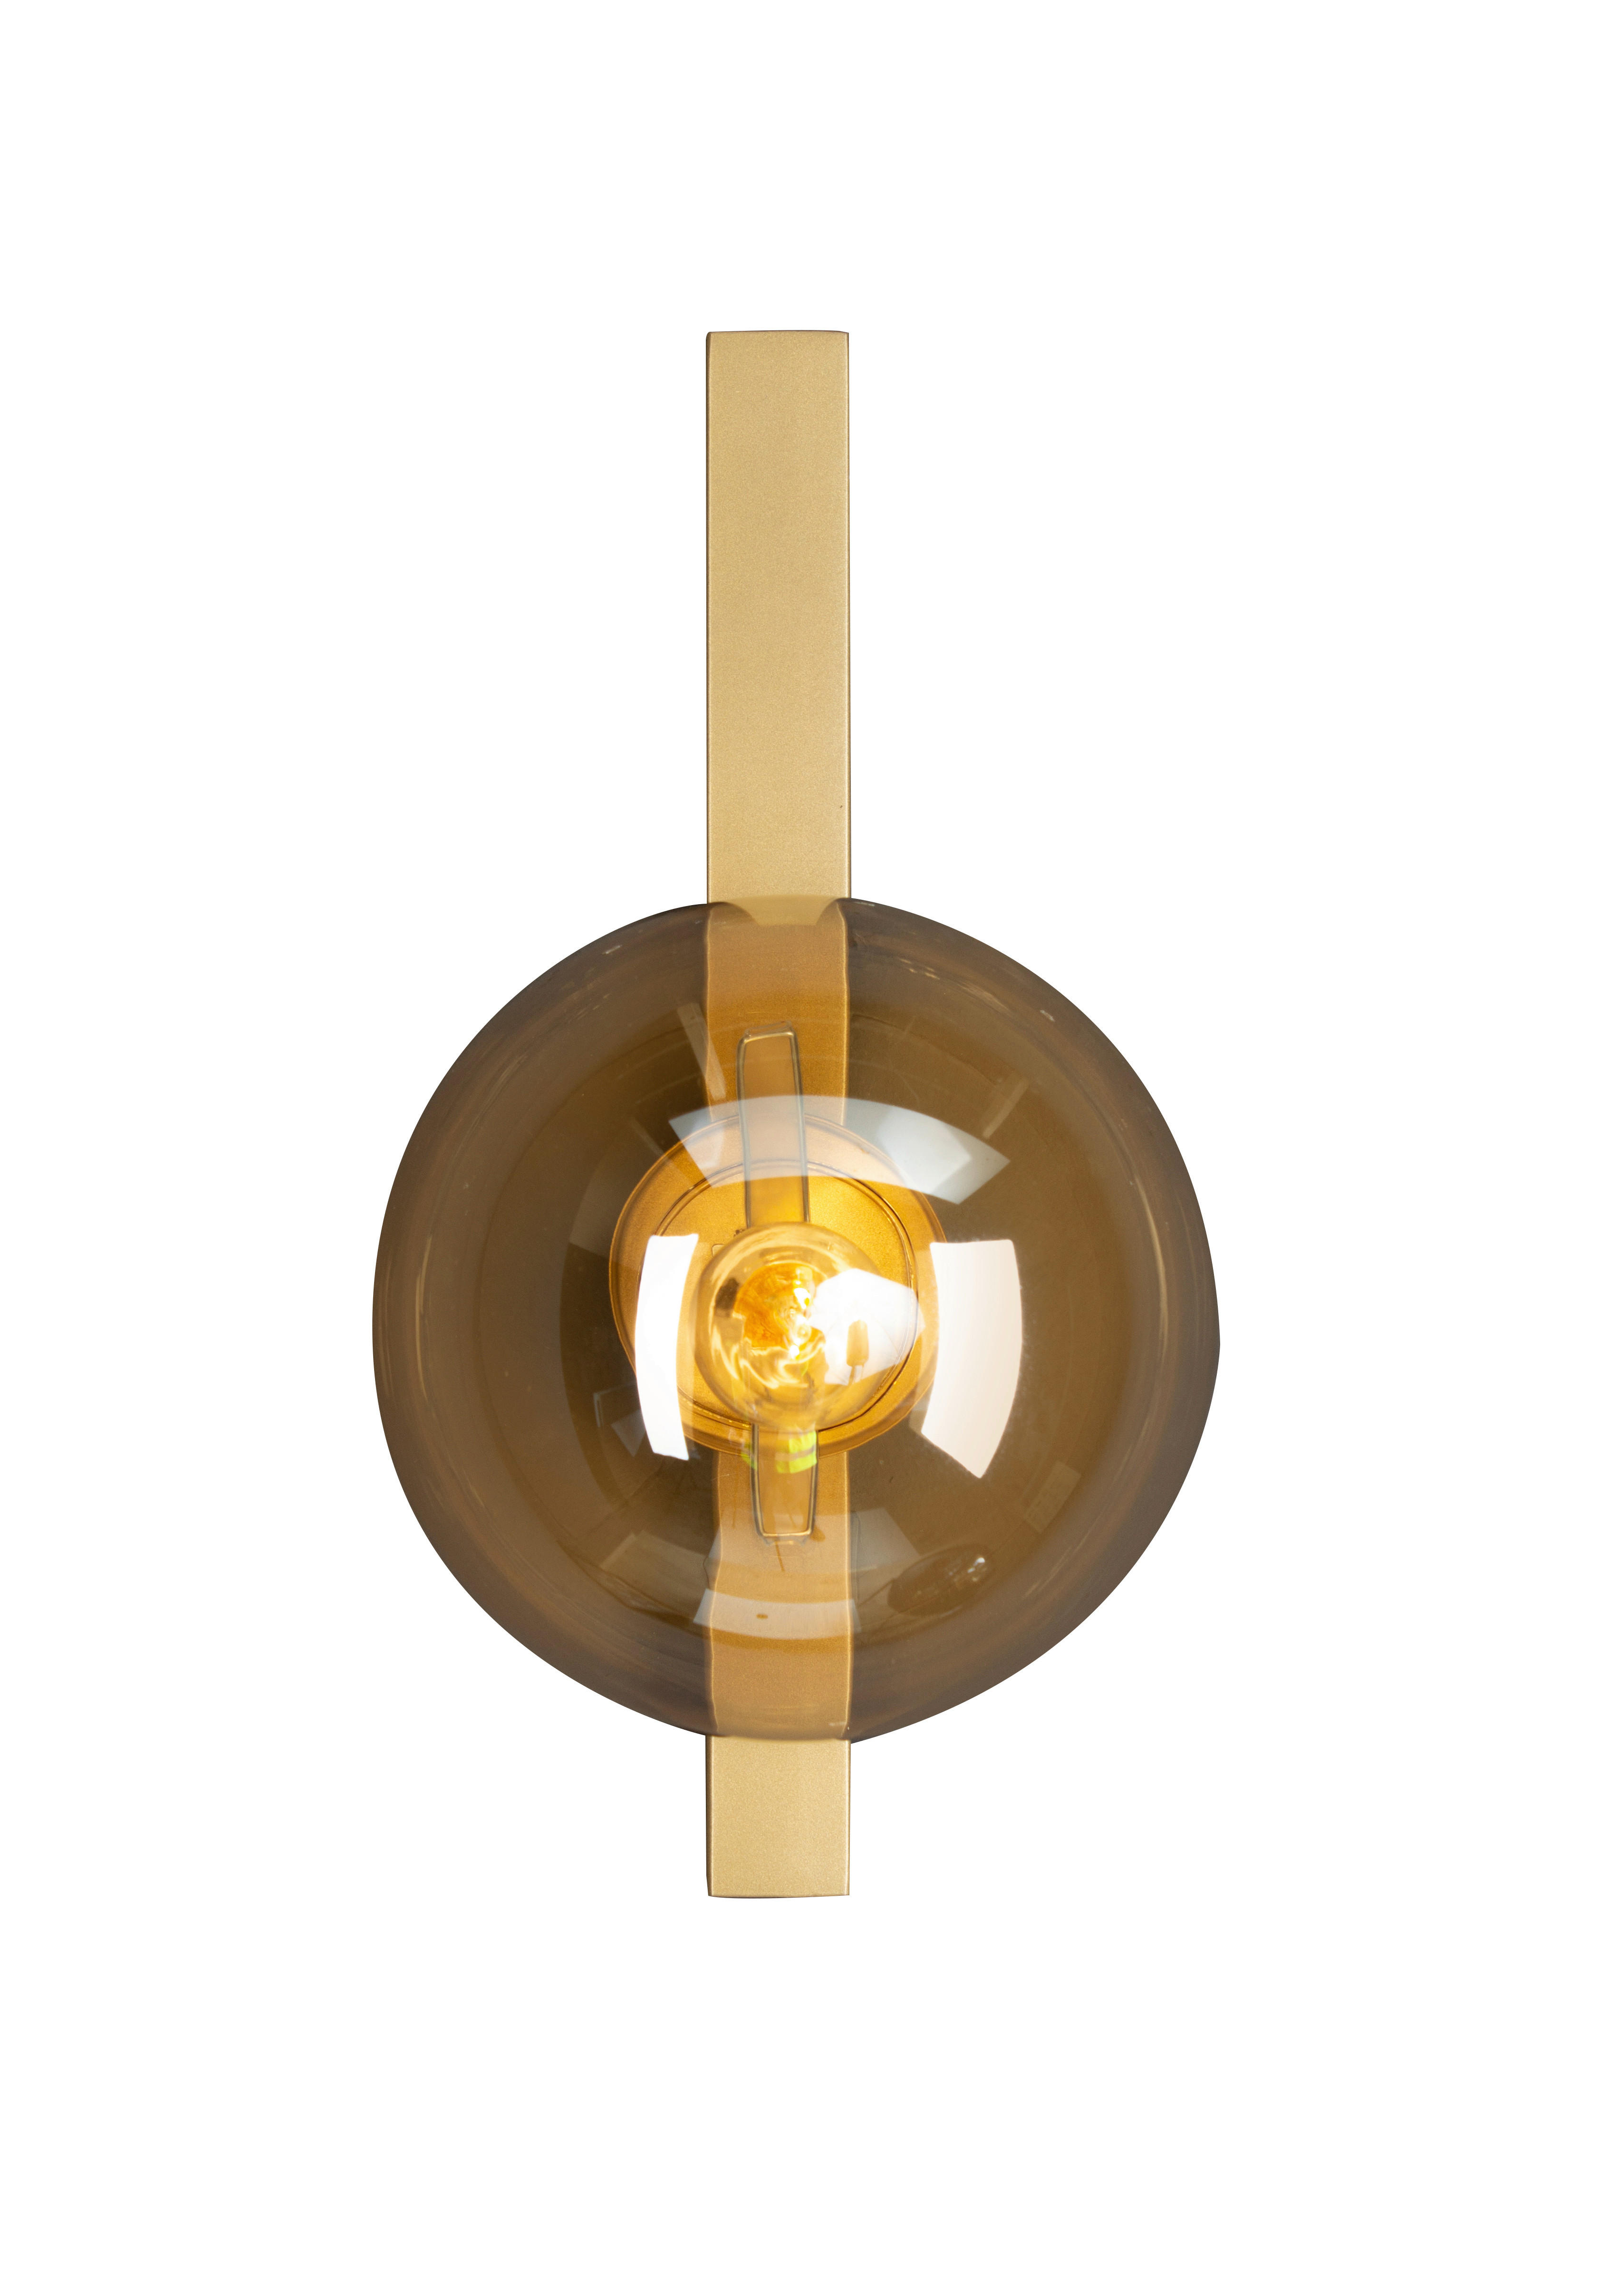 WANDLEUCHTE 28/14/16,5 cm   - Goldfarben/Bernsteinfarben, Design, Glas/Metall (28/14/16,5cm)